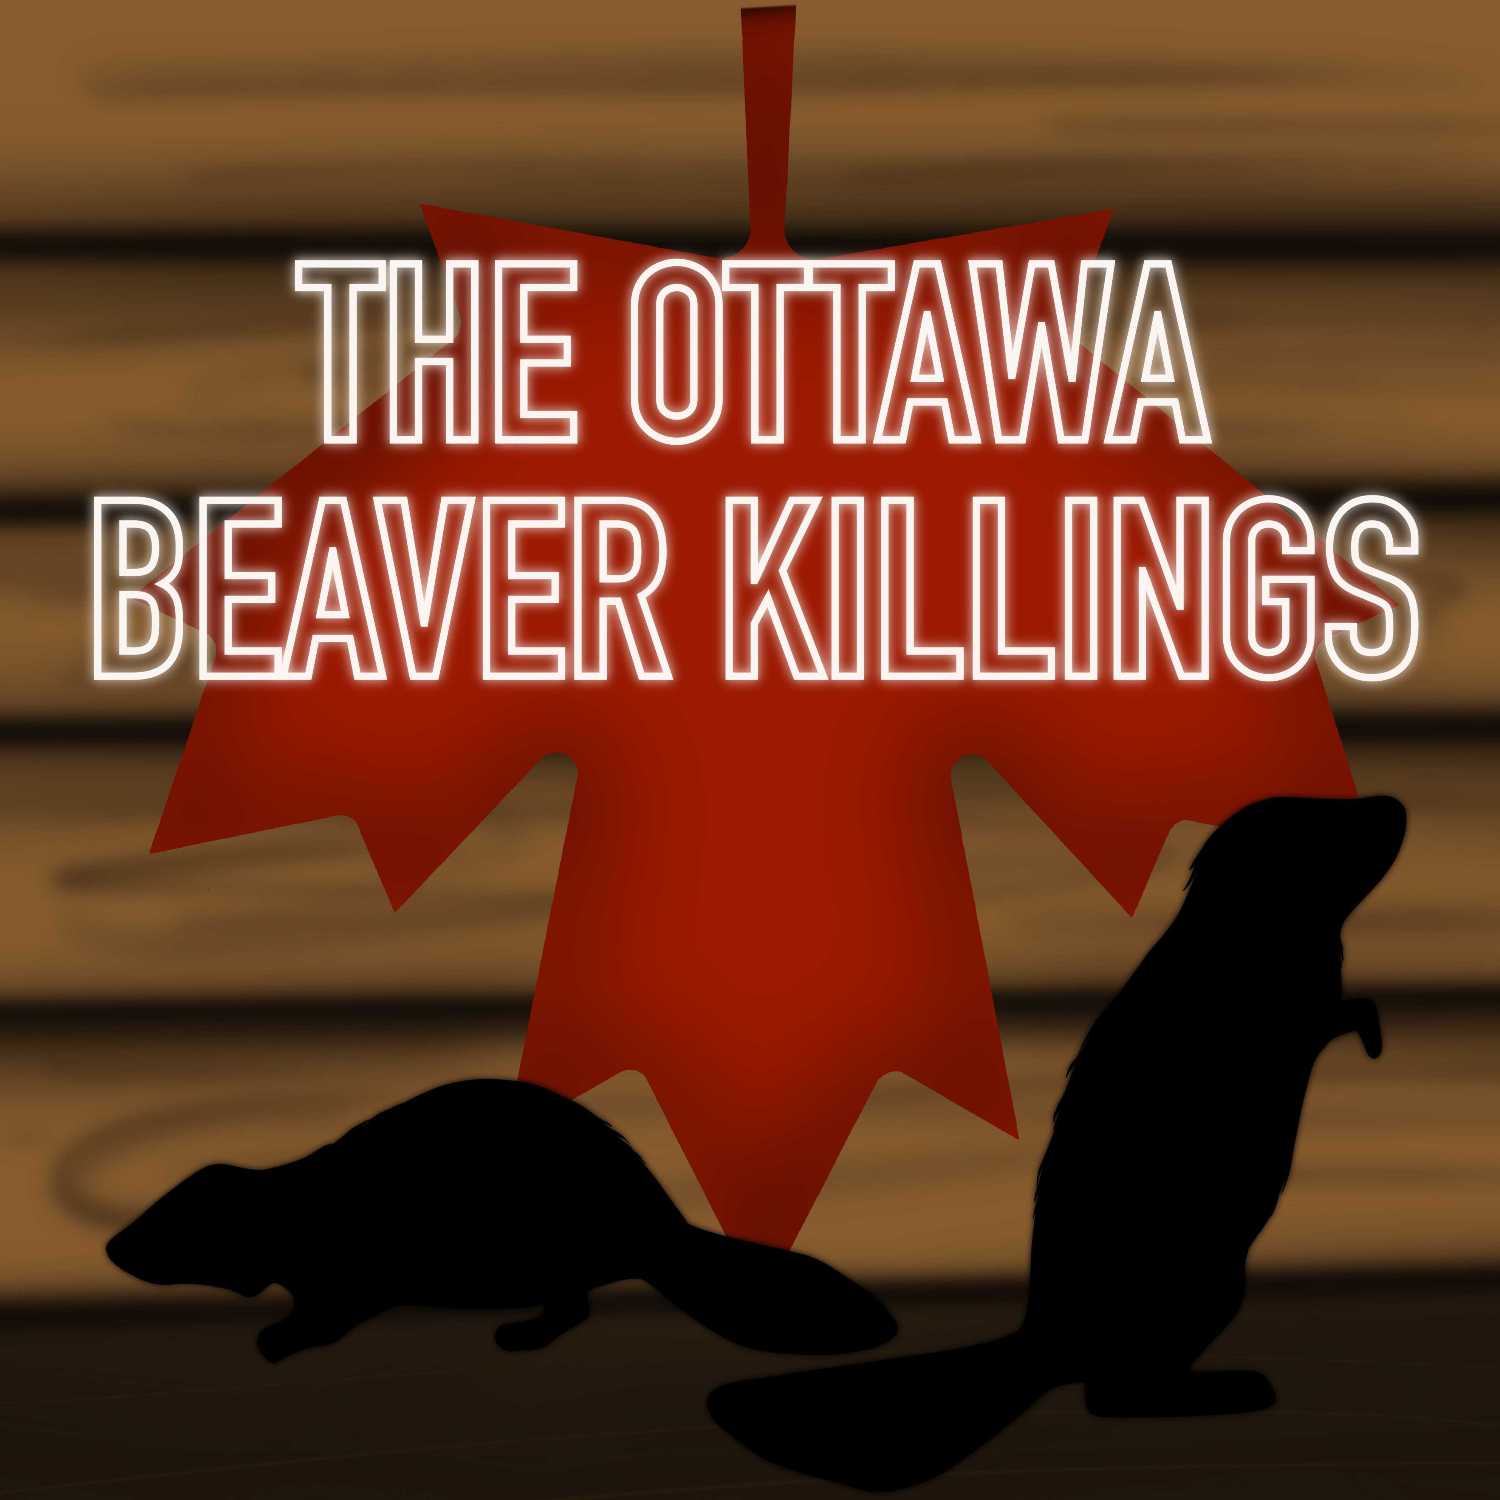 The Ottawa Beaver Killings part 2